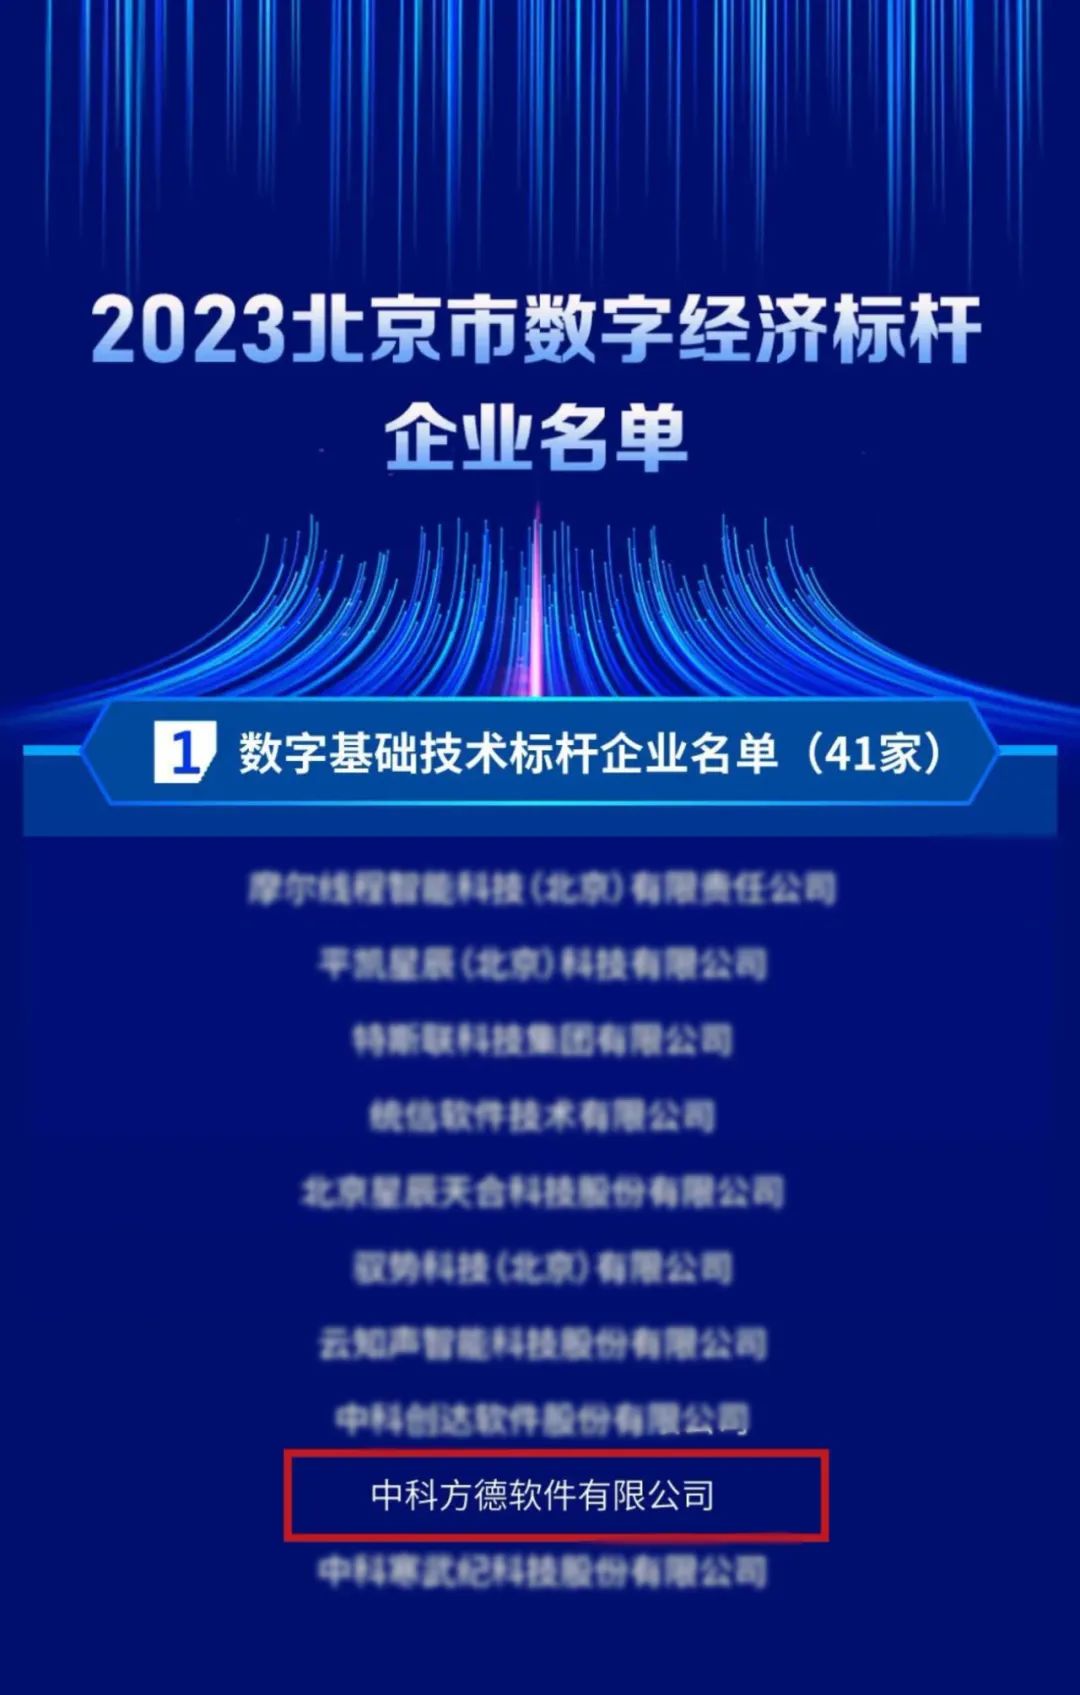 中科方德入选2023北京市数字经济标杆企业名单